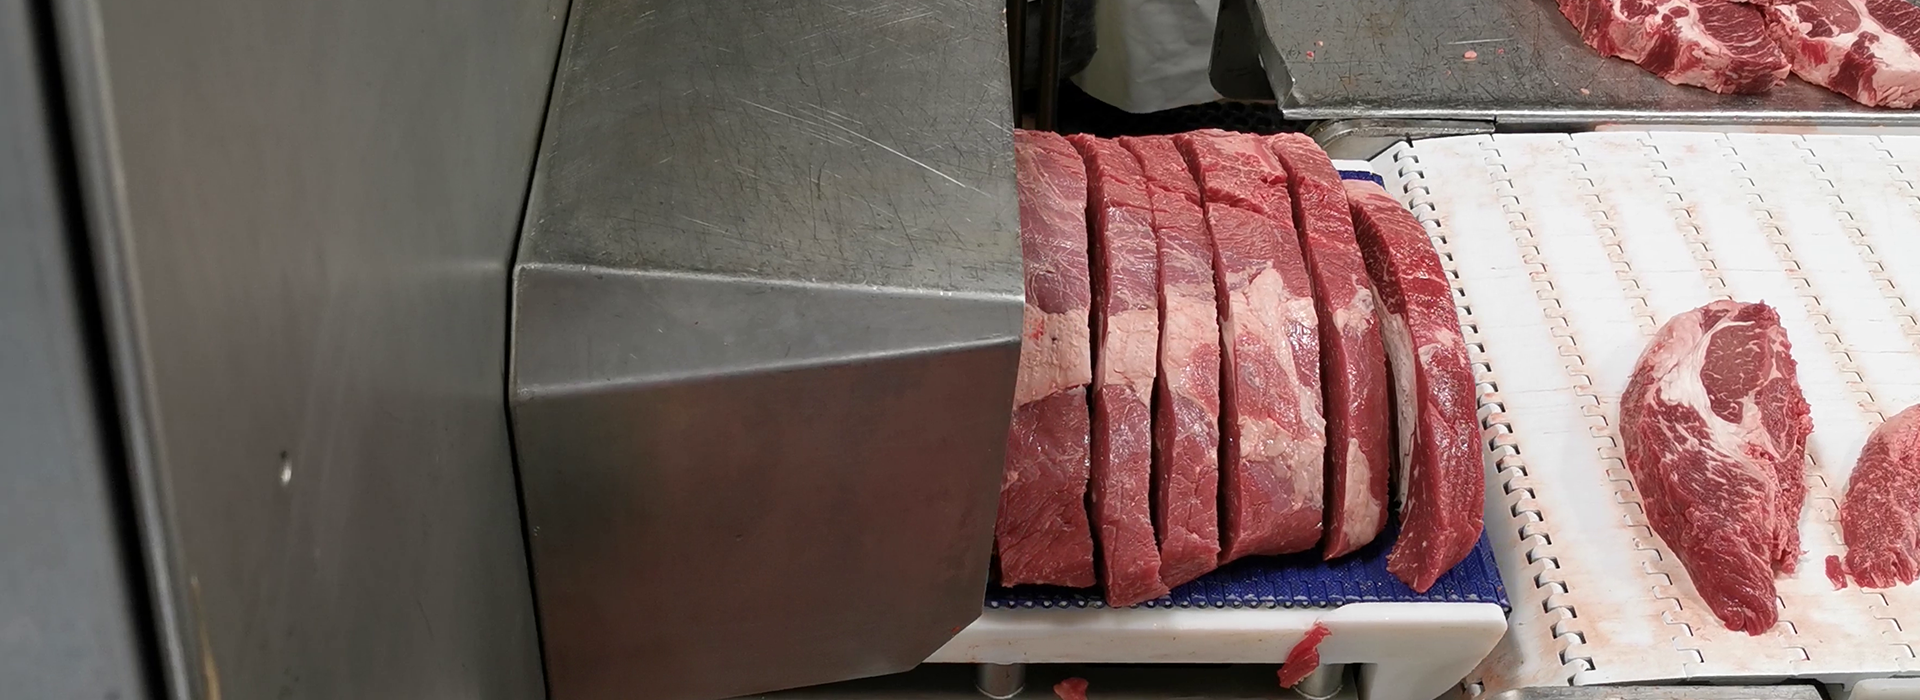 Portion cutter PORTIO 3D for cutting steaks, strip loin, rib eye, tenderloin, pork loin